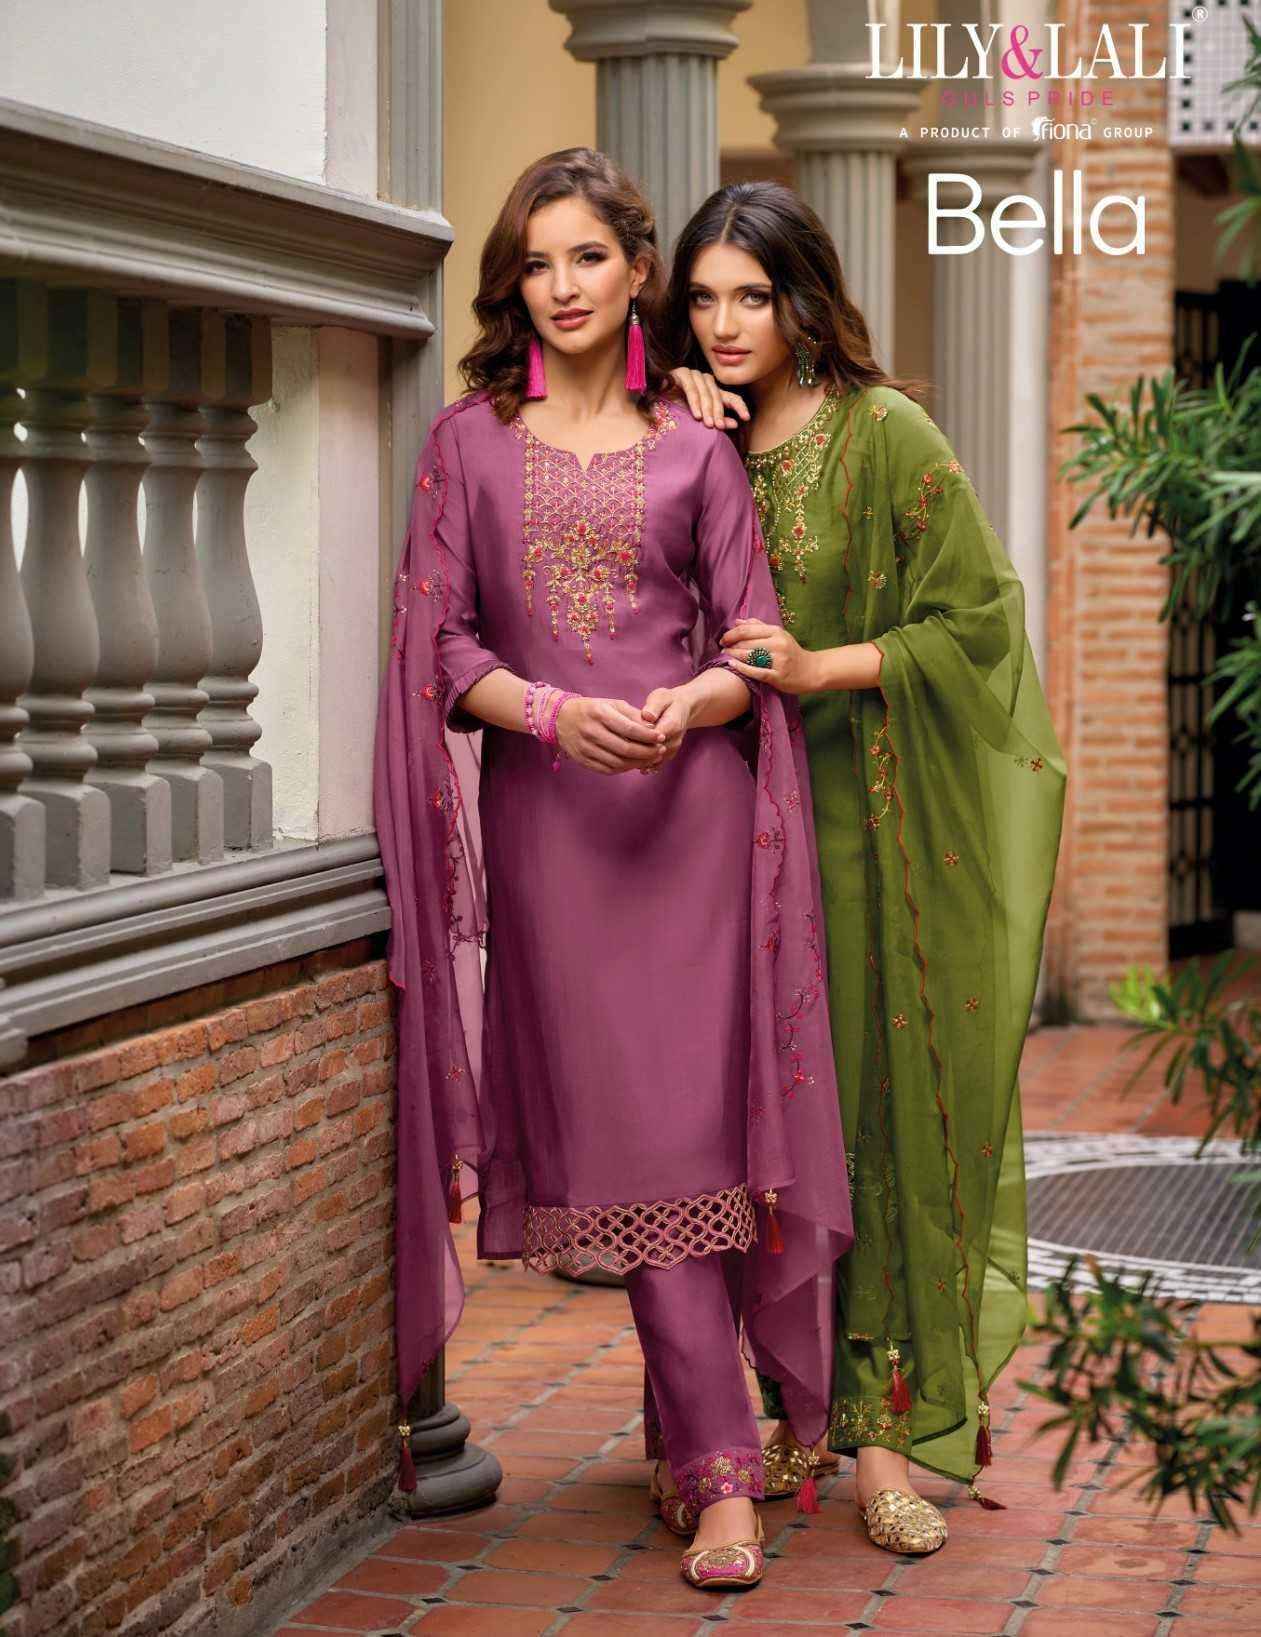 Lily & Lali Bella Silk Kurti Combo 6 pcs Catalogue - Surat Wholesale Market